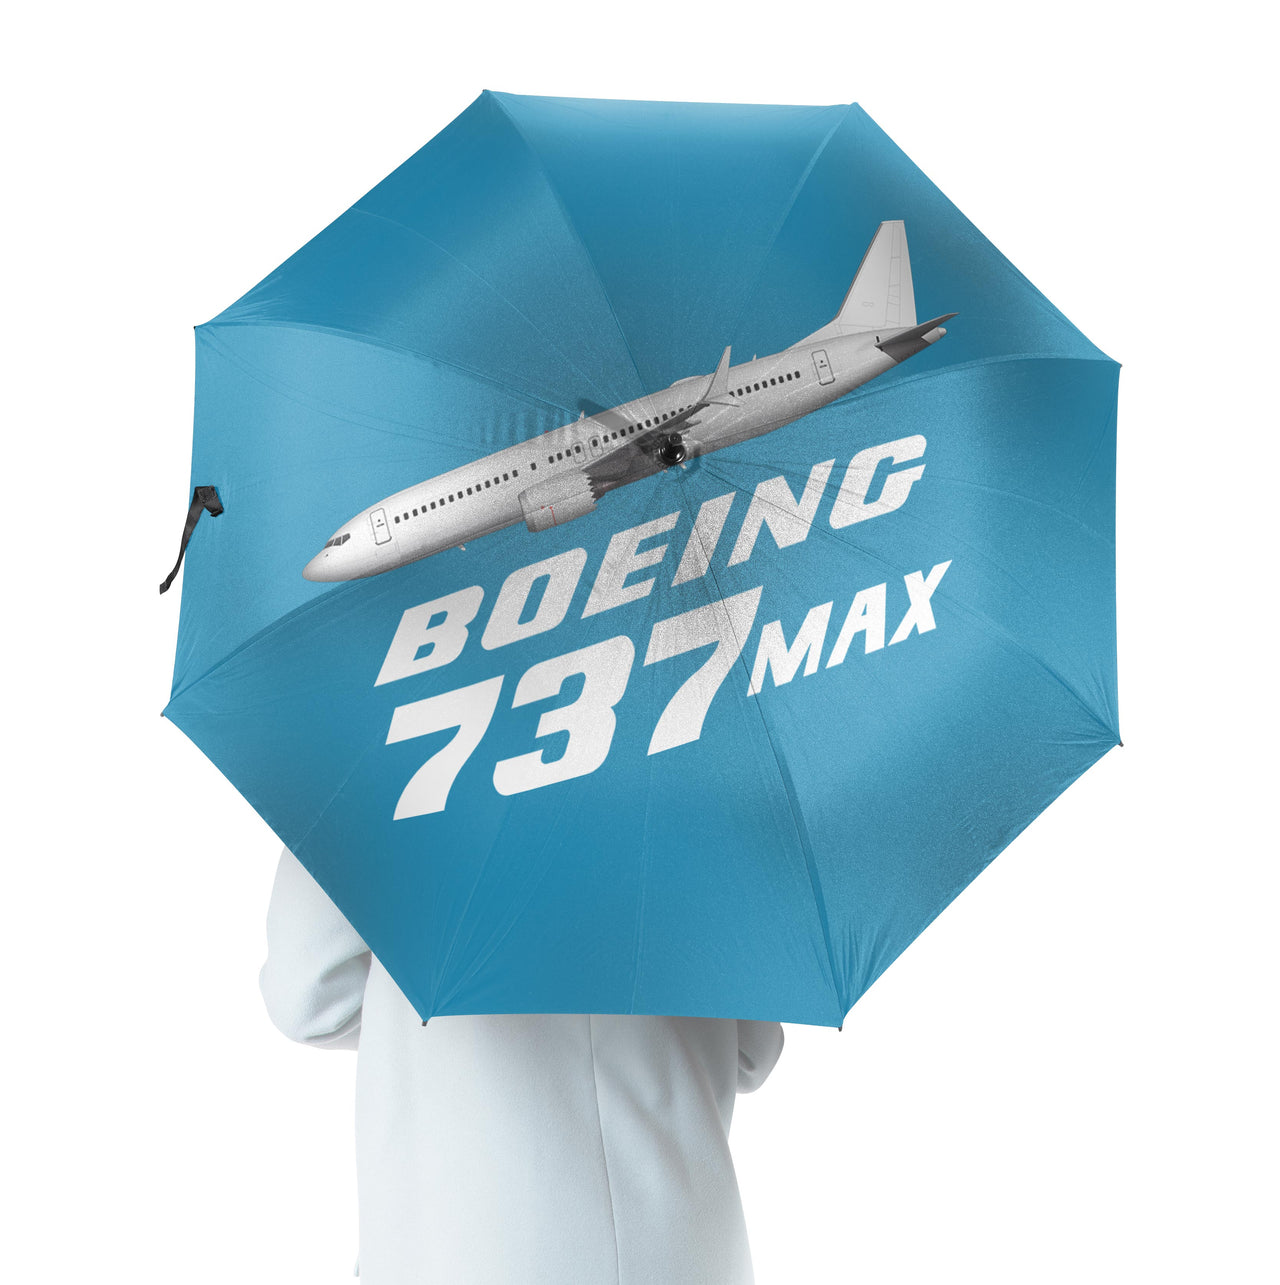 The Boeing 737Max Designed Umbrella